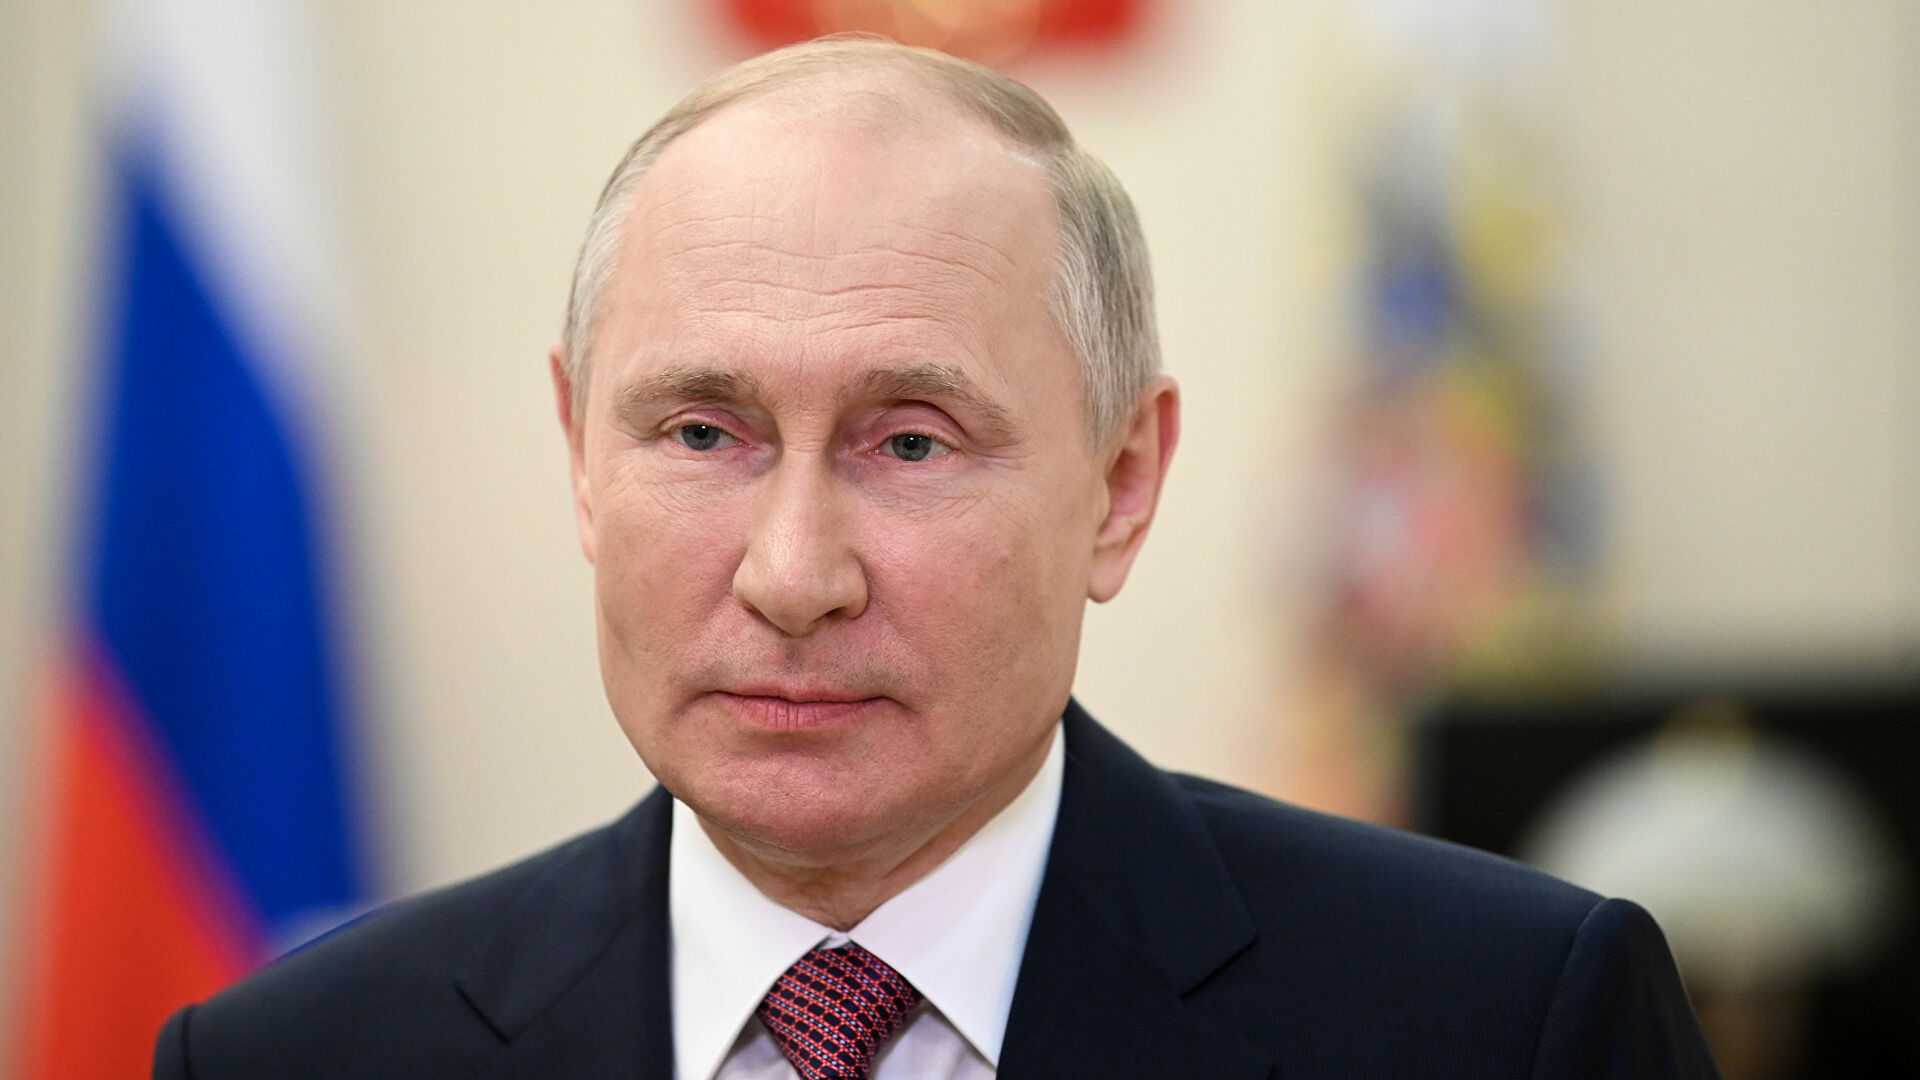 Unia w bezsilnej złości, gdy Putin prowadzi swoje gazowe gry